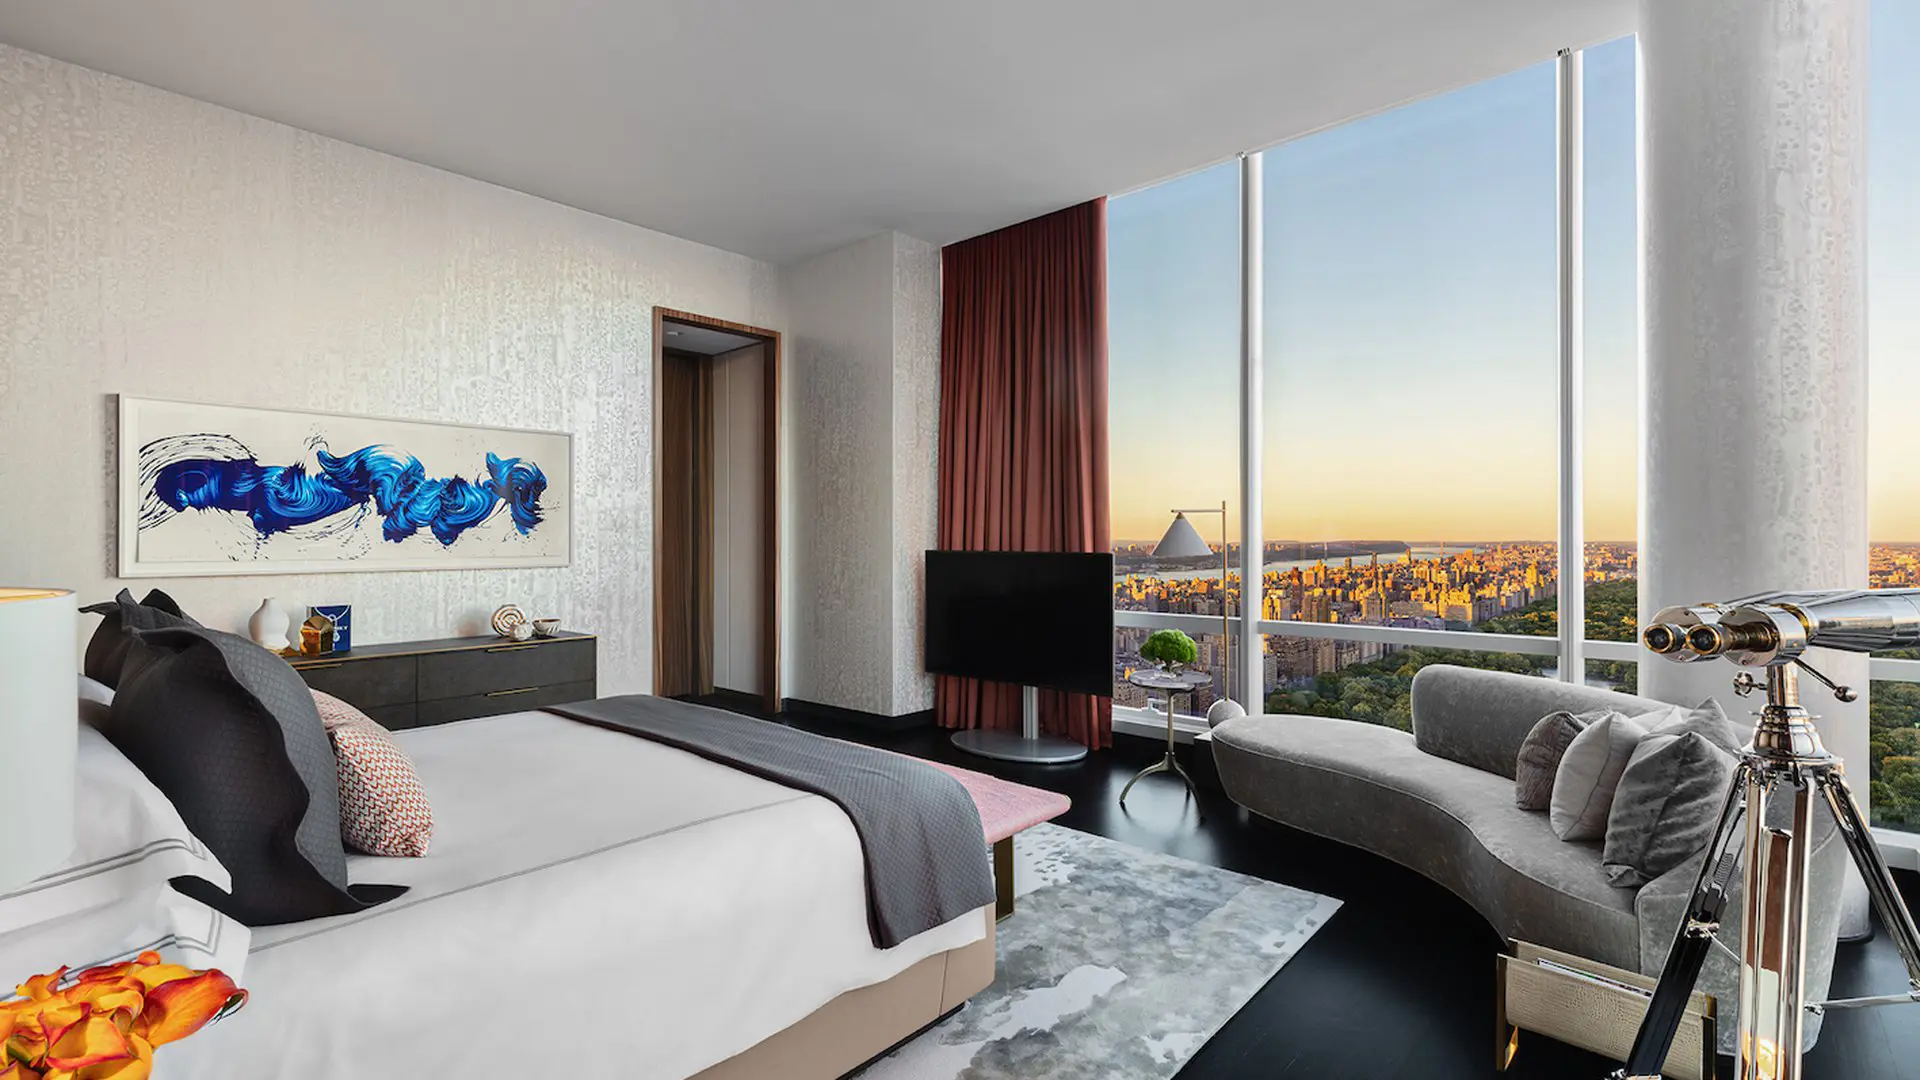 فندق "بارك حياة نيويورك" يفتتح جناح "مانهاتن سكاي" أعلى جناح فندقي في نيويورك